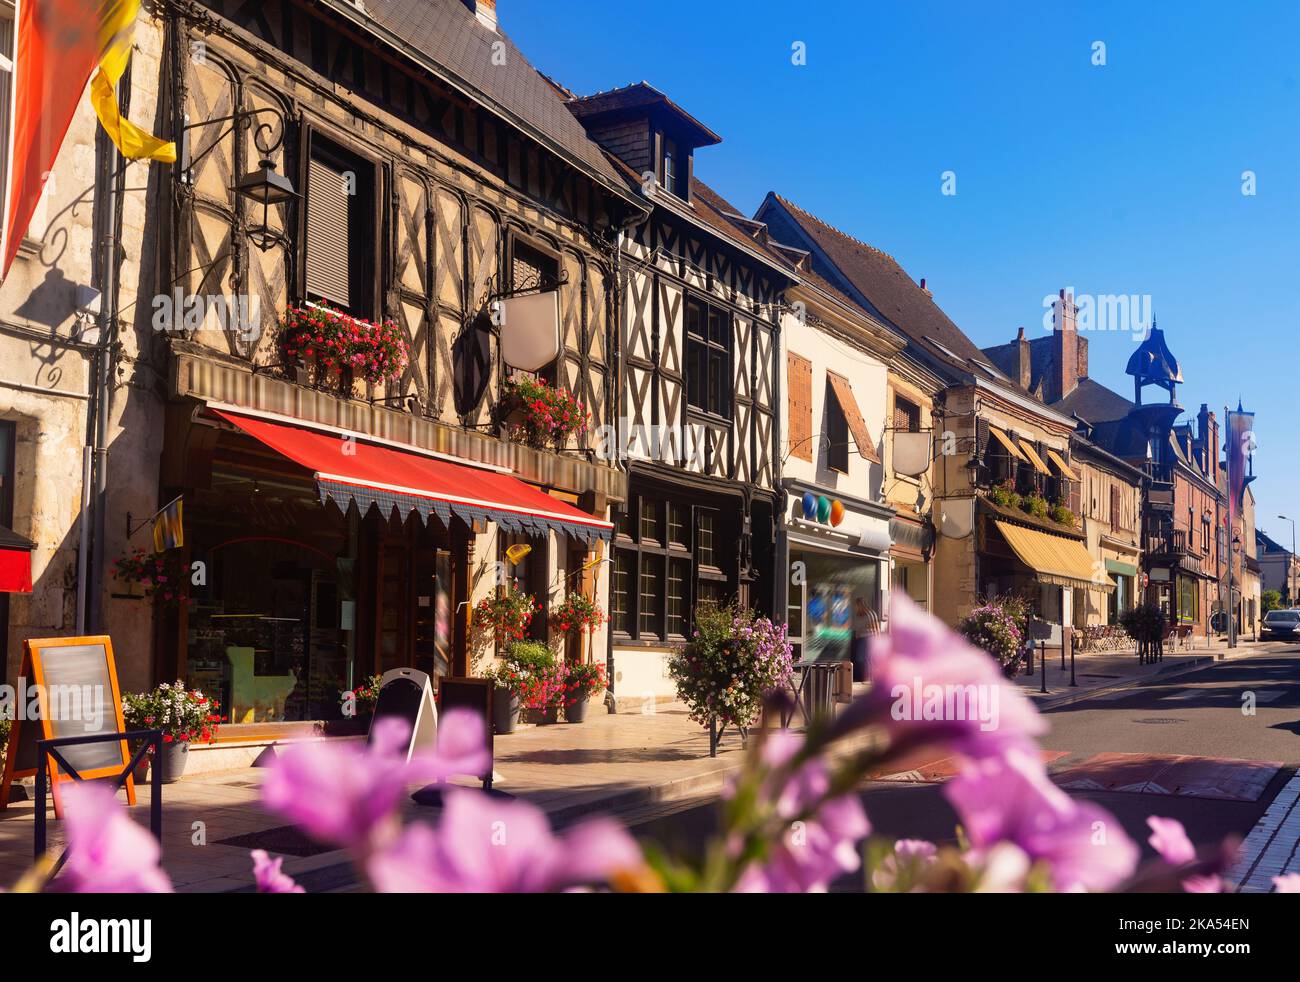 Centro de Aubigny-sur-Nere, municipio y comuna francesa, departamento de Cher, en el distrito de Bourges y cantón de Aubigny-sur-Nere Foto de stock